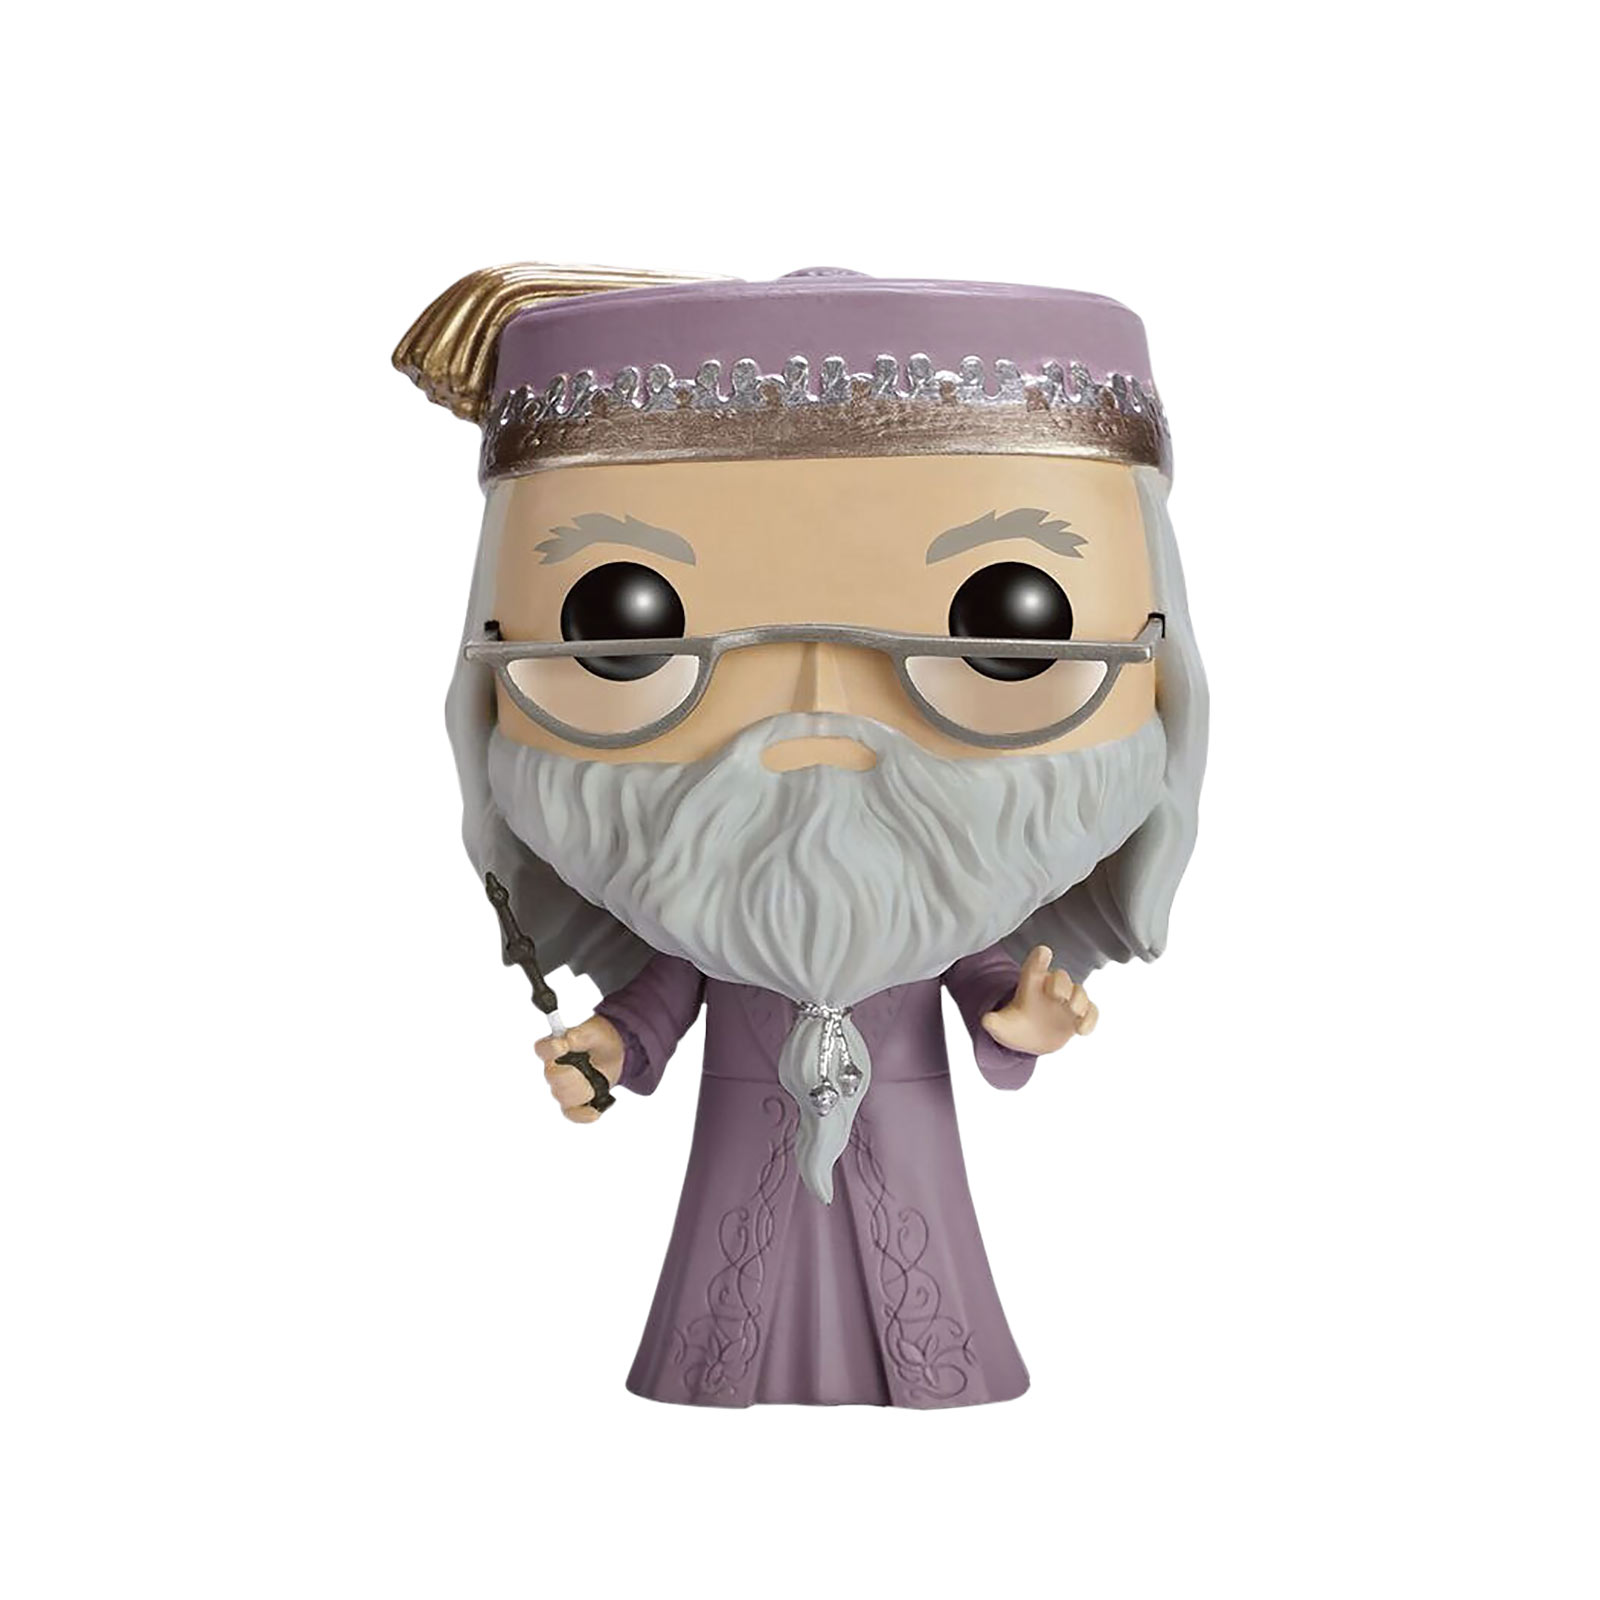 Harry Potter - Dumbledore with Elder Wand Funko Pop Figure